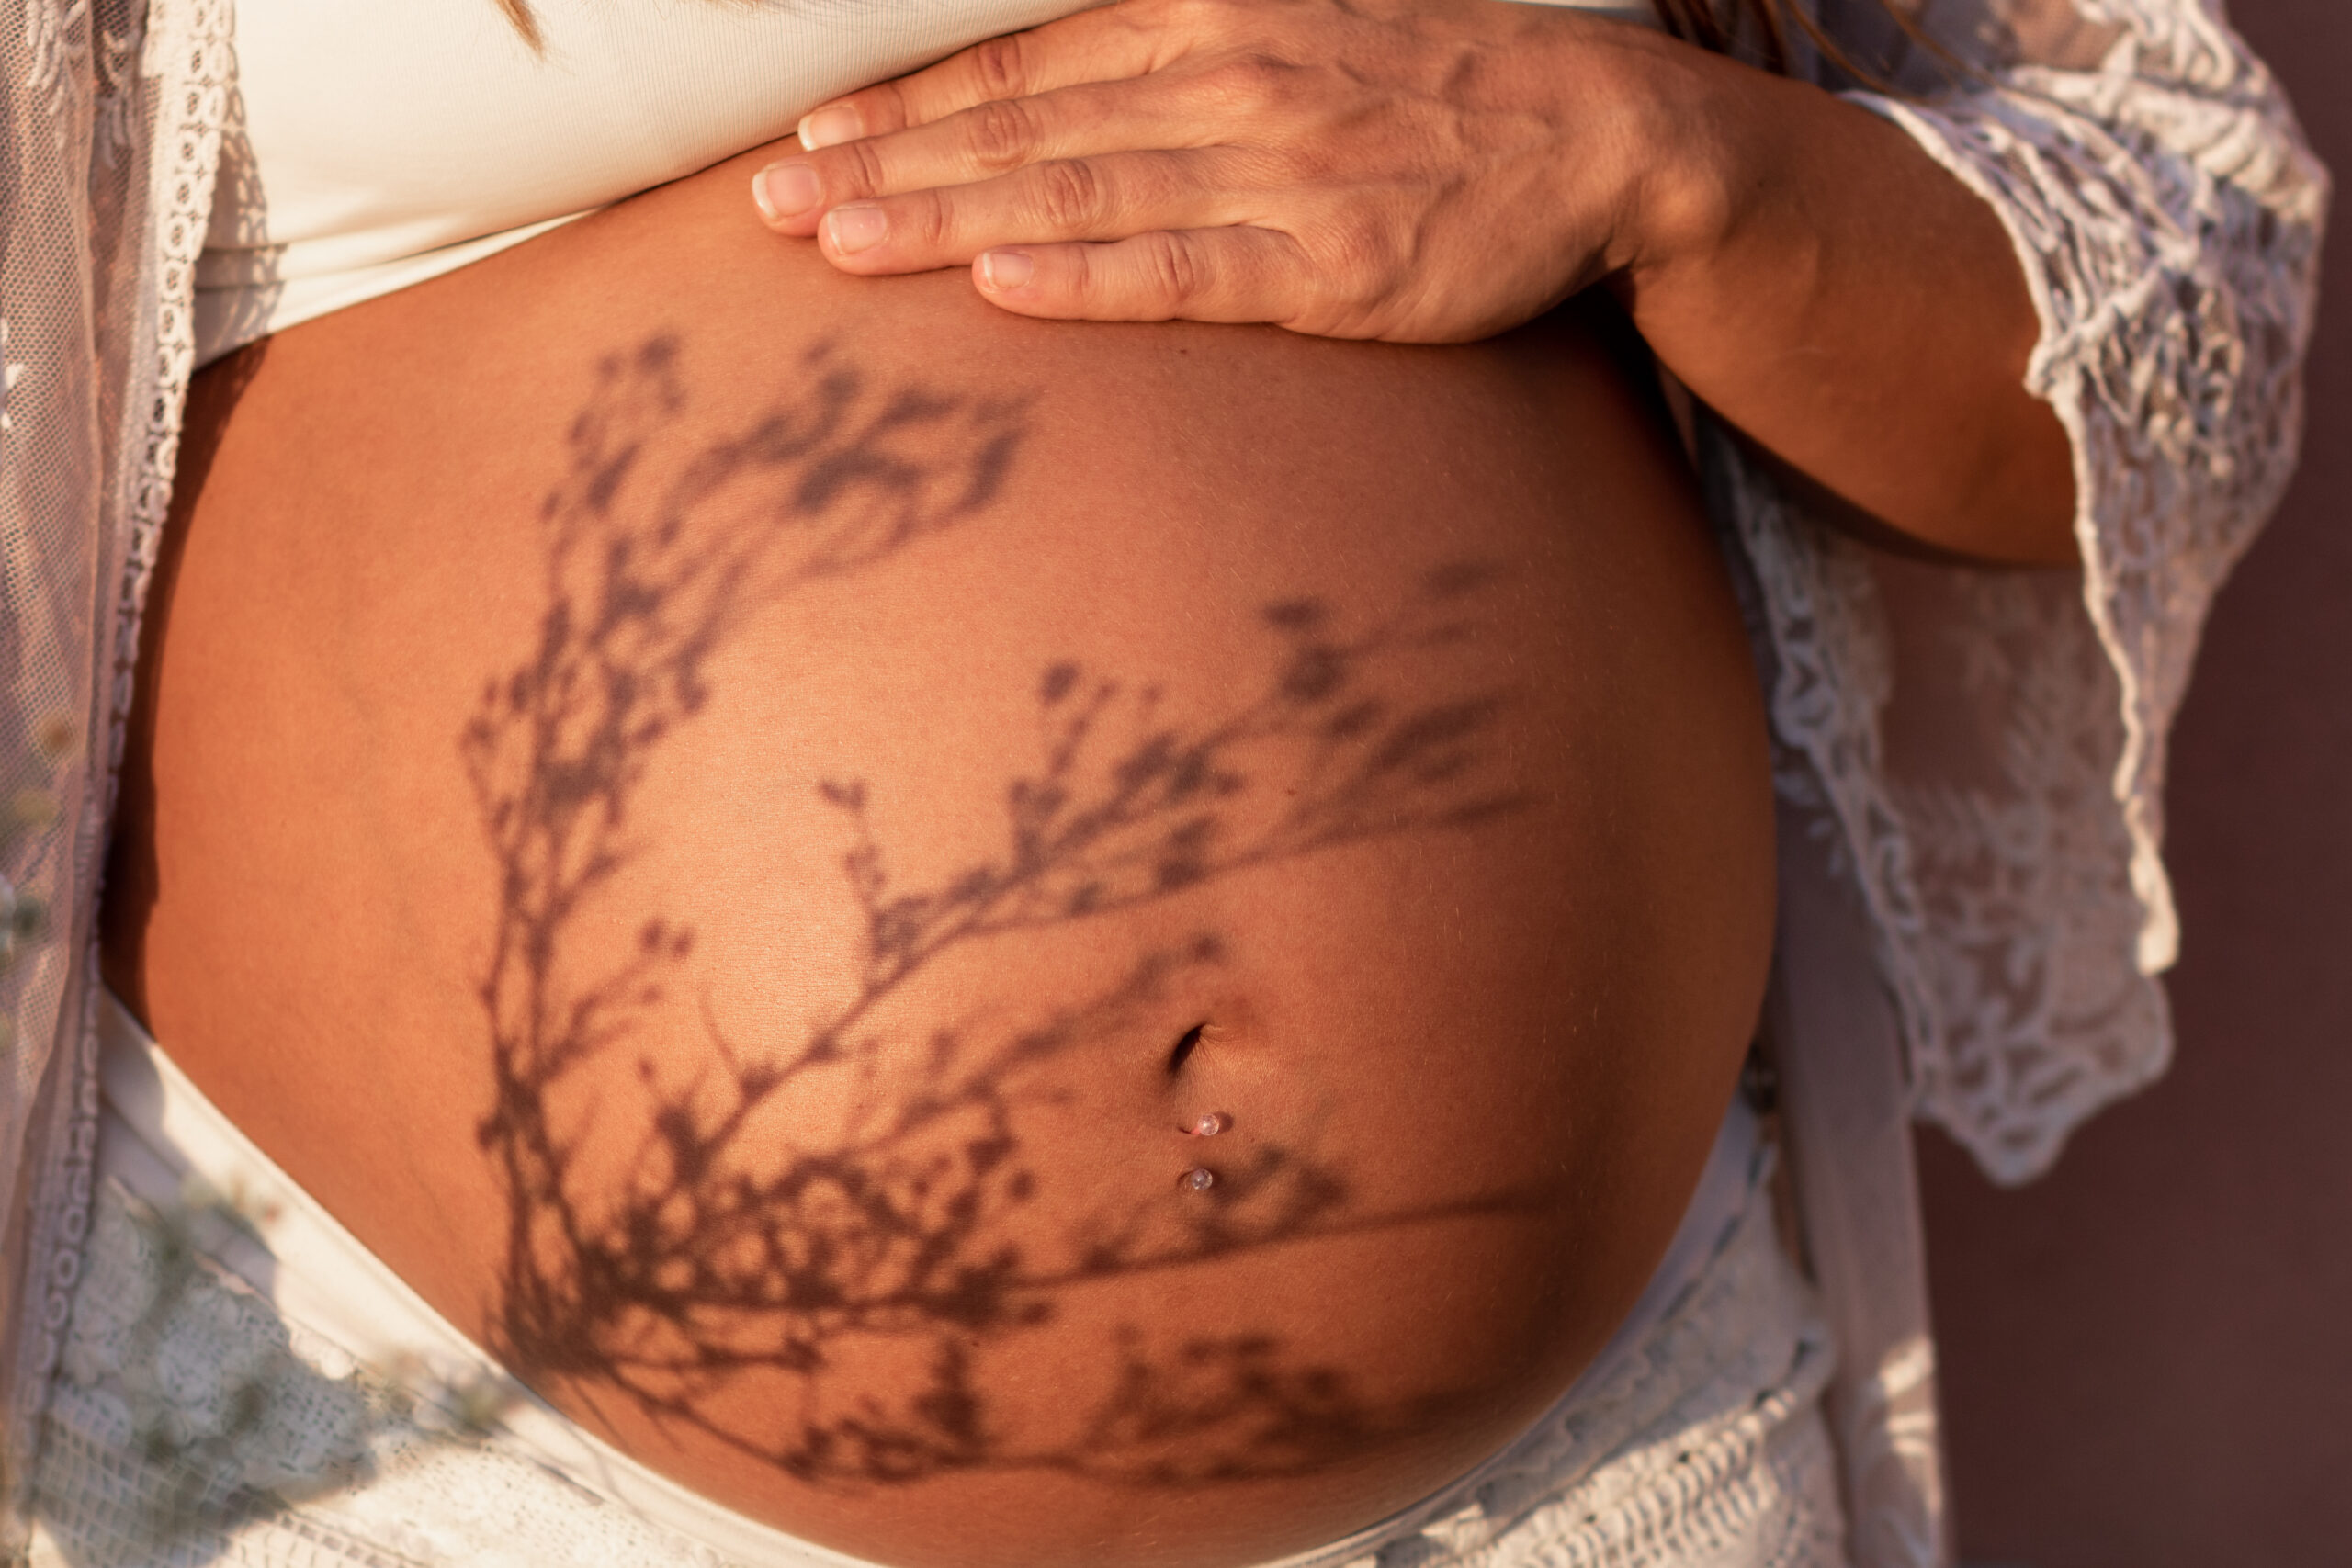 yksivaltimoinen napanuora: kuvituskuva raskaana olevan naisen vatsasta